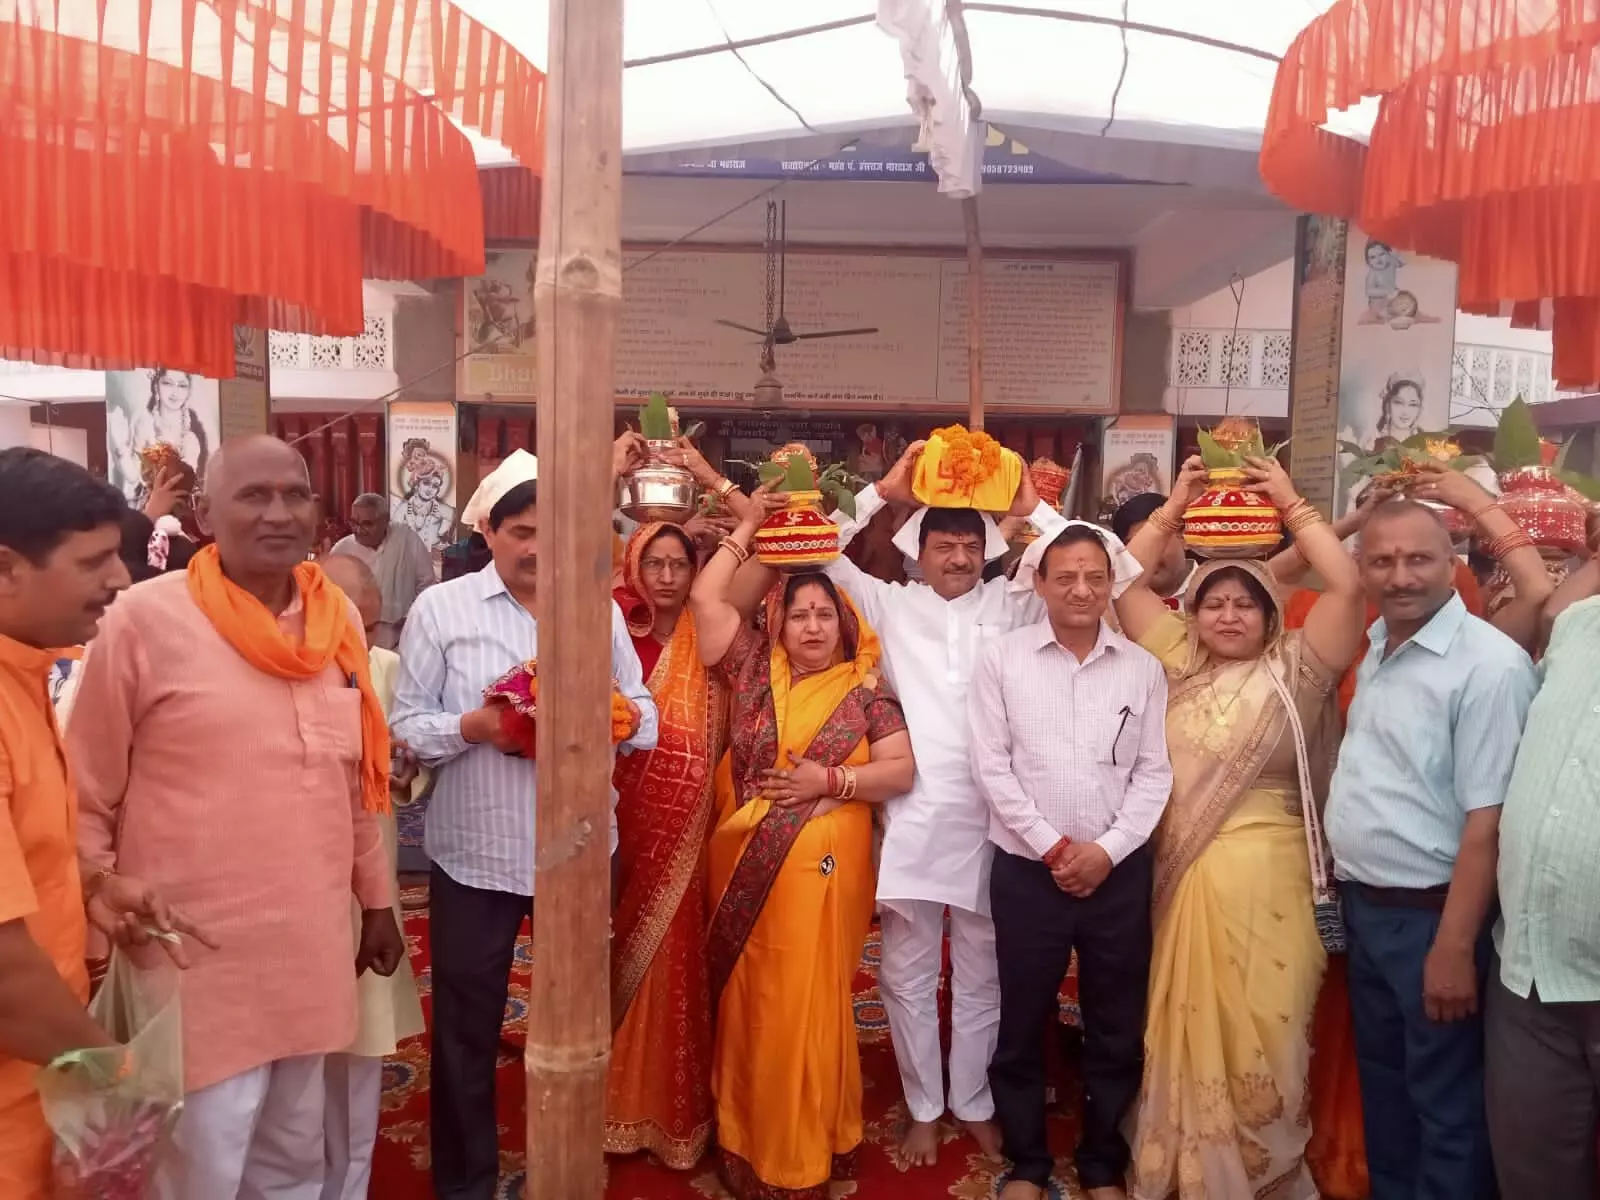 श्री श्यामा श्याम मंदिर के 32वे स्थापना दिवस की कलश यात्रा का मंत्री कपिल देव अग्रवाल ने किया शुभारंभ